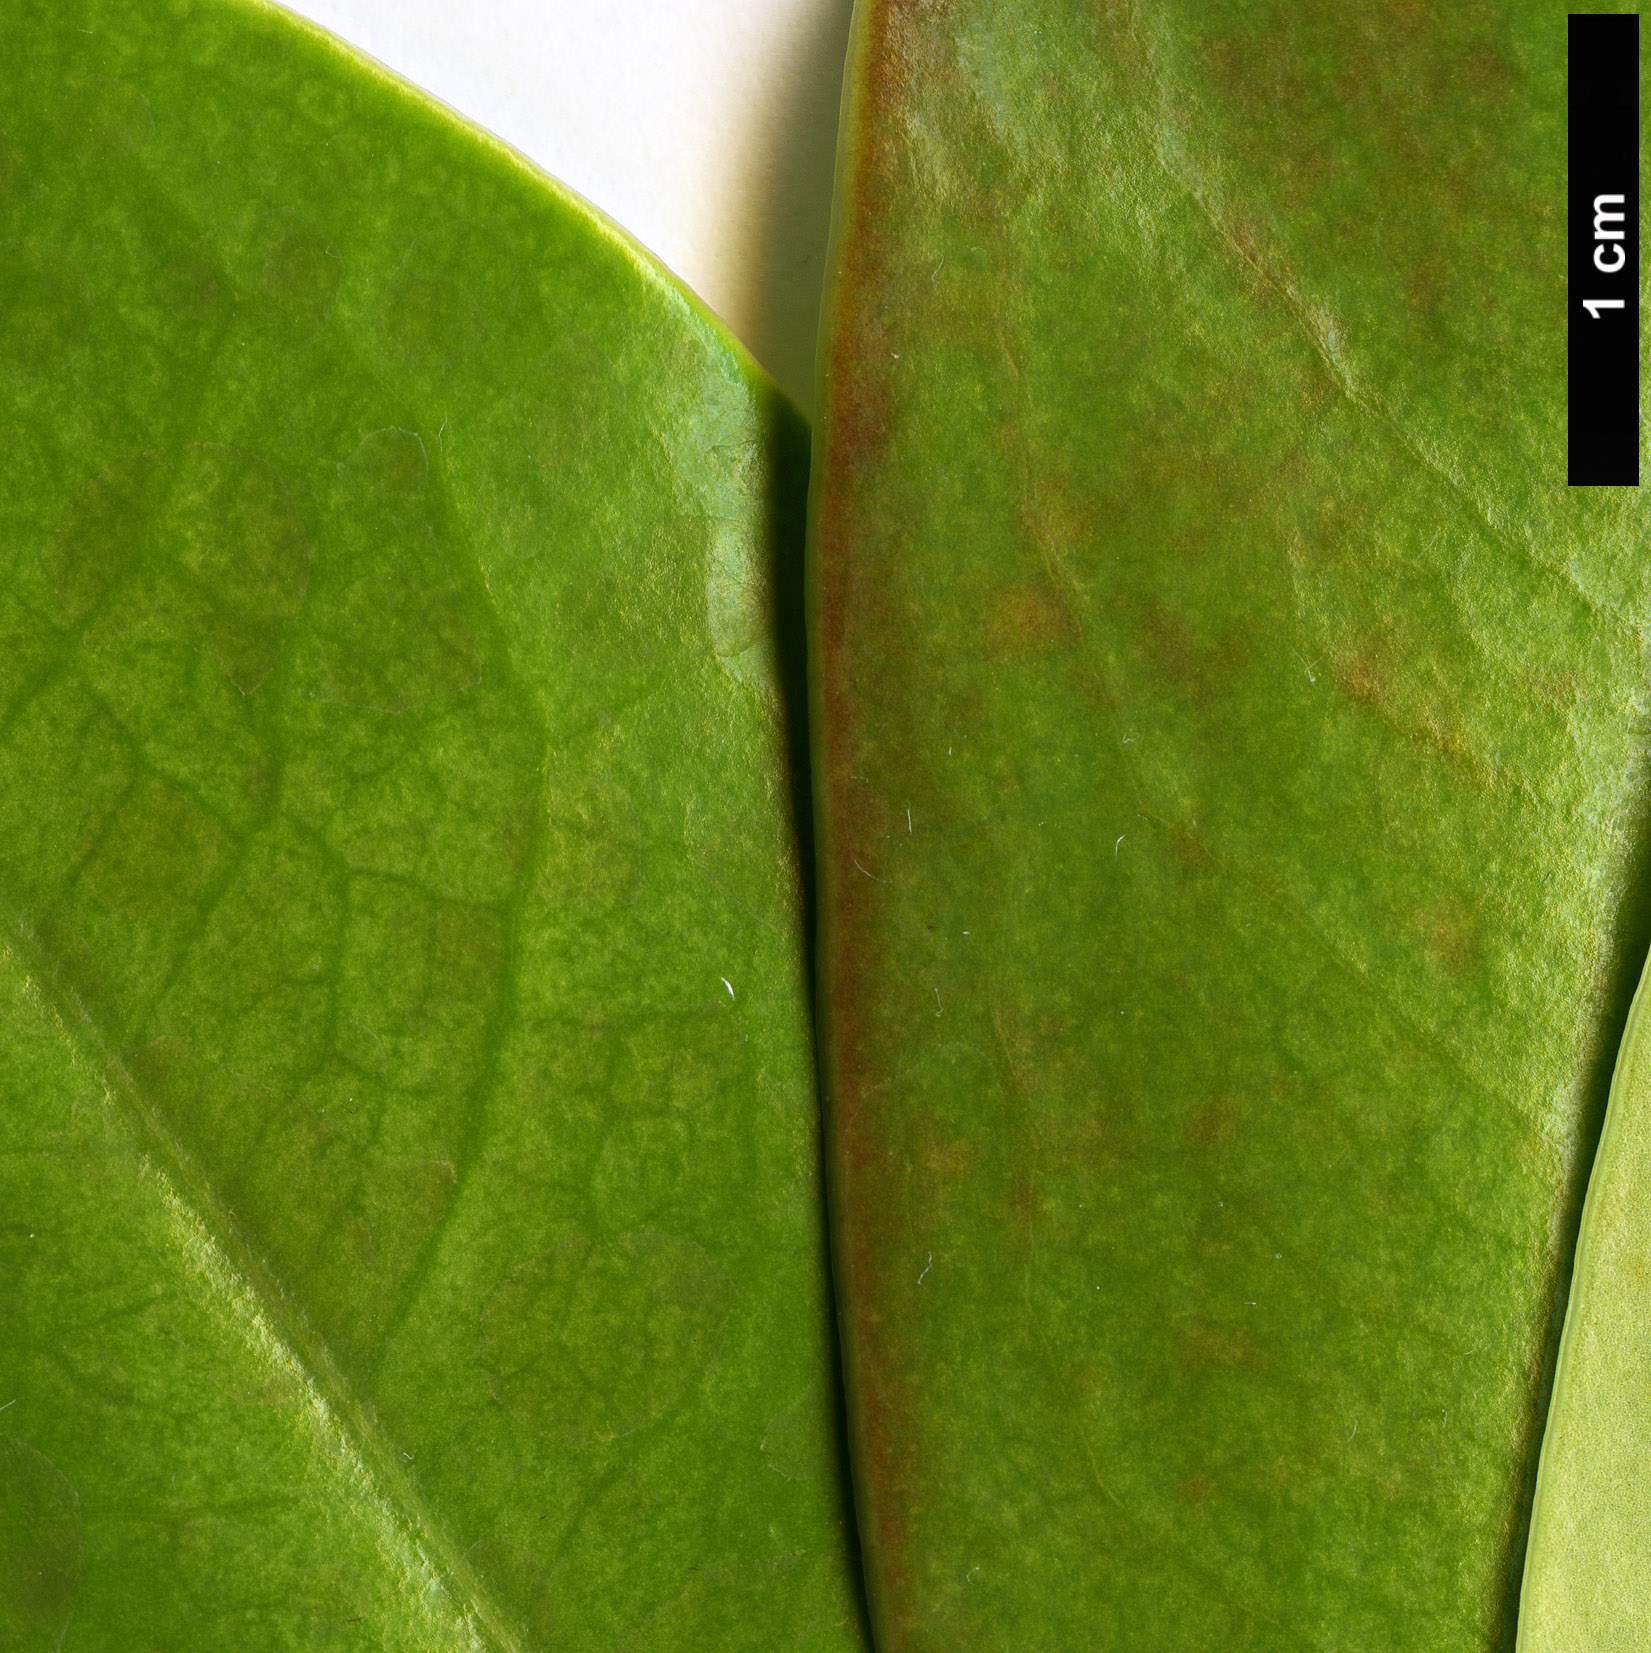 High resolution image: Family: Magnoliaceae - Genus: Magnolia - Taxon: sinica